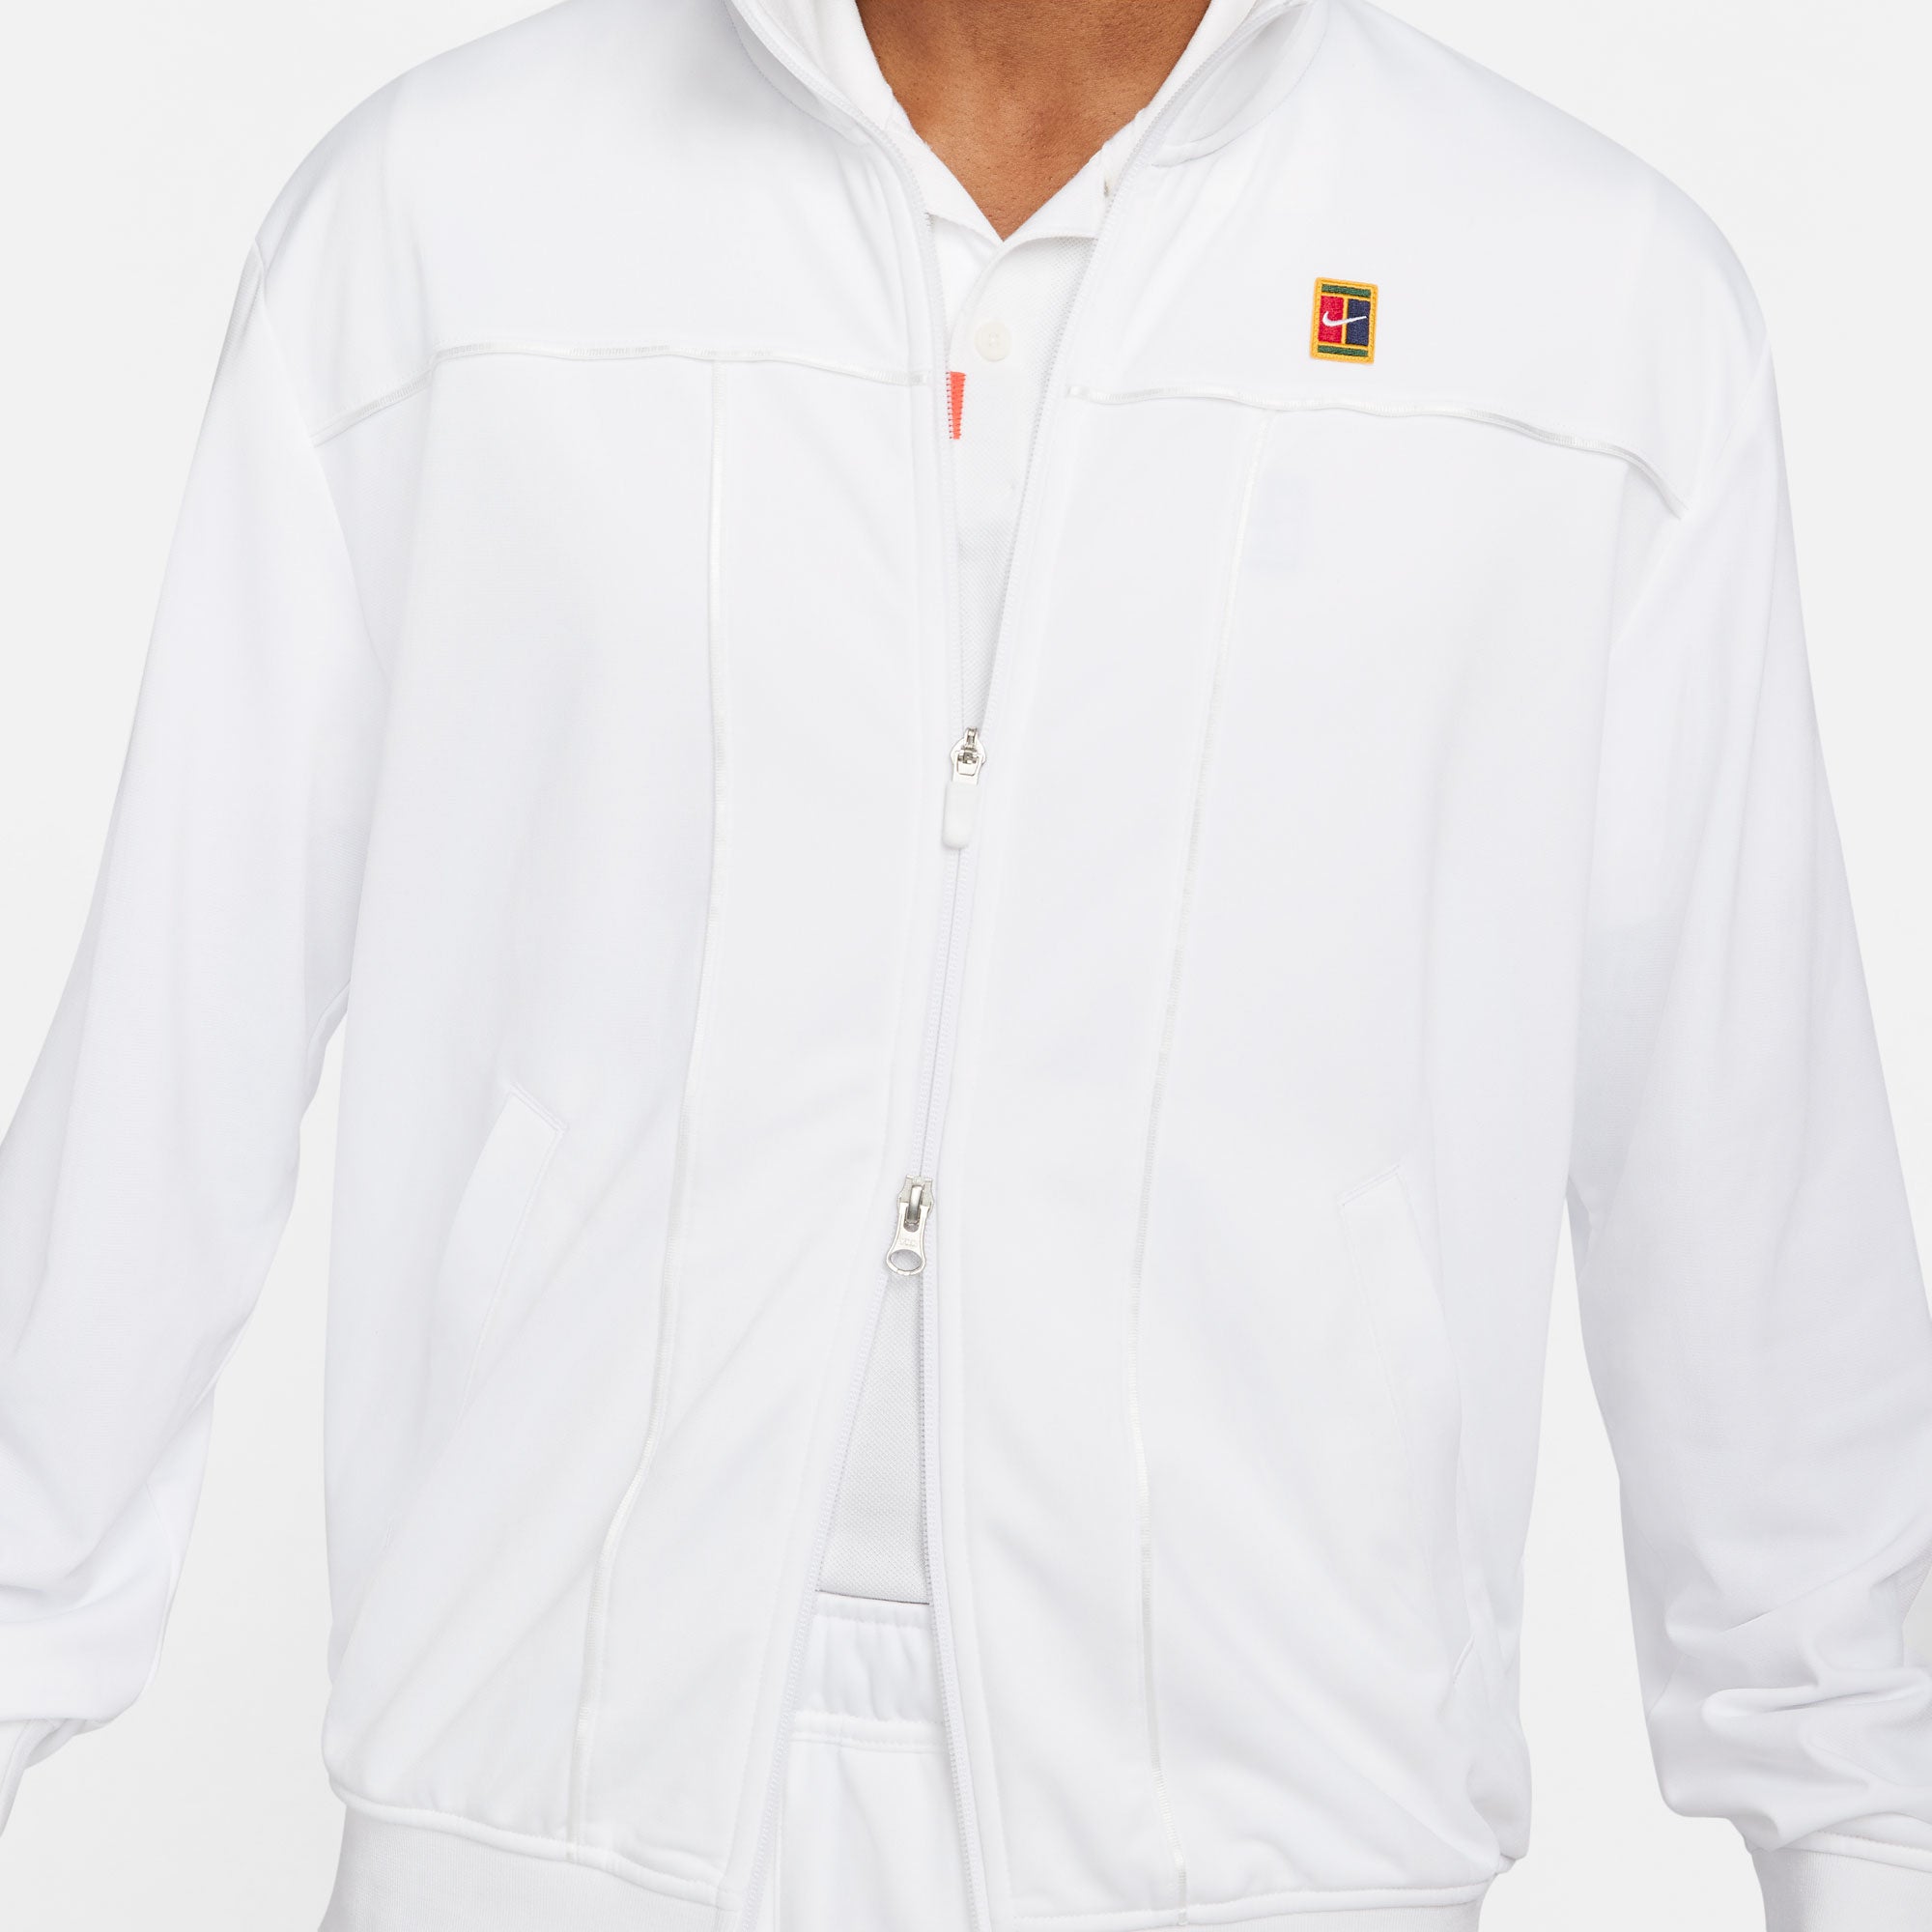 NikeCourt Heritage Men's Tennis Jacket White (6)